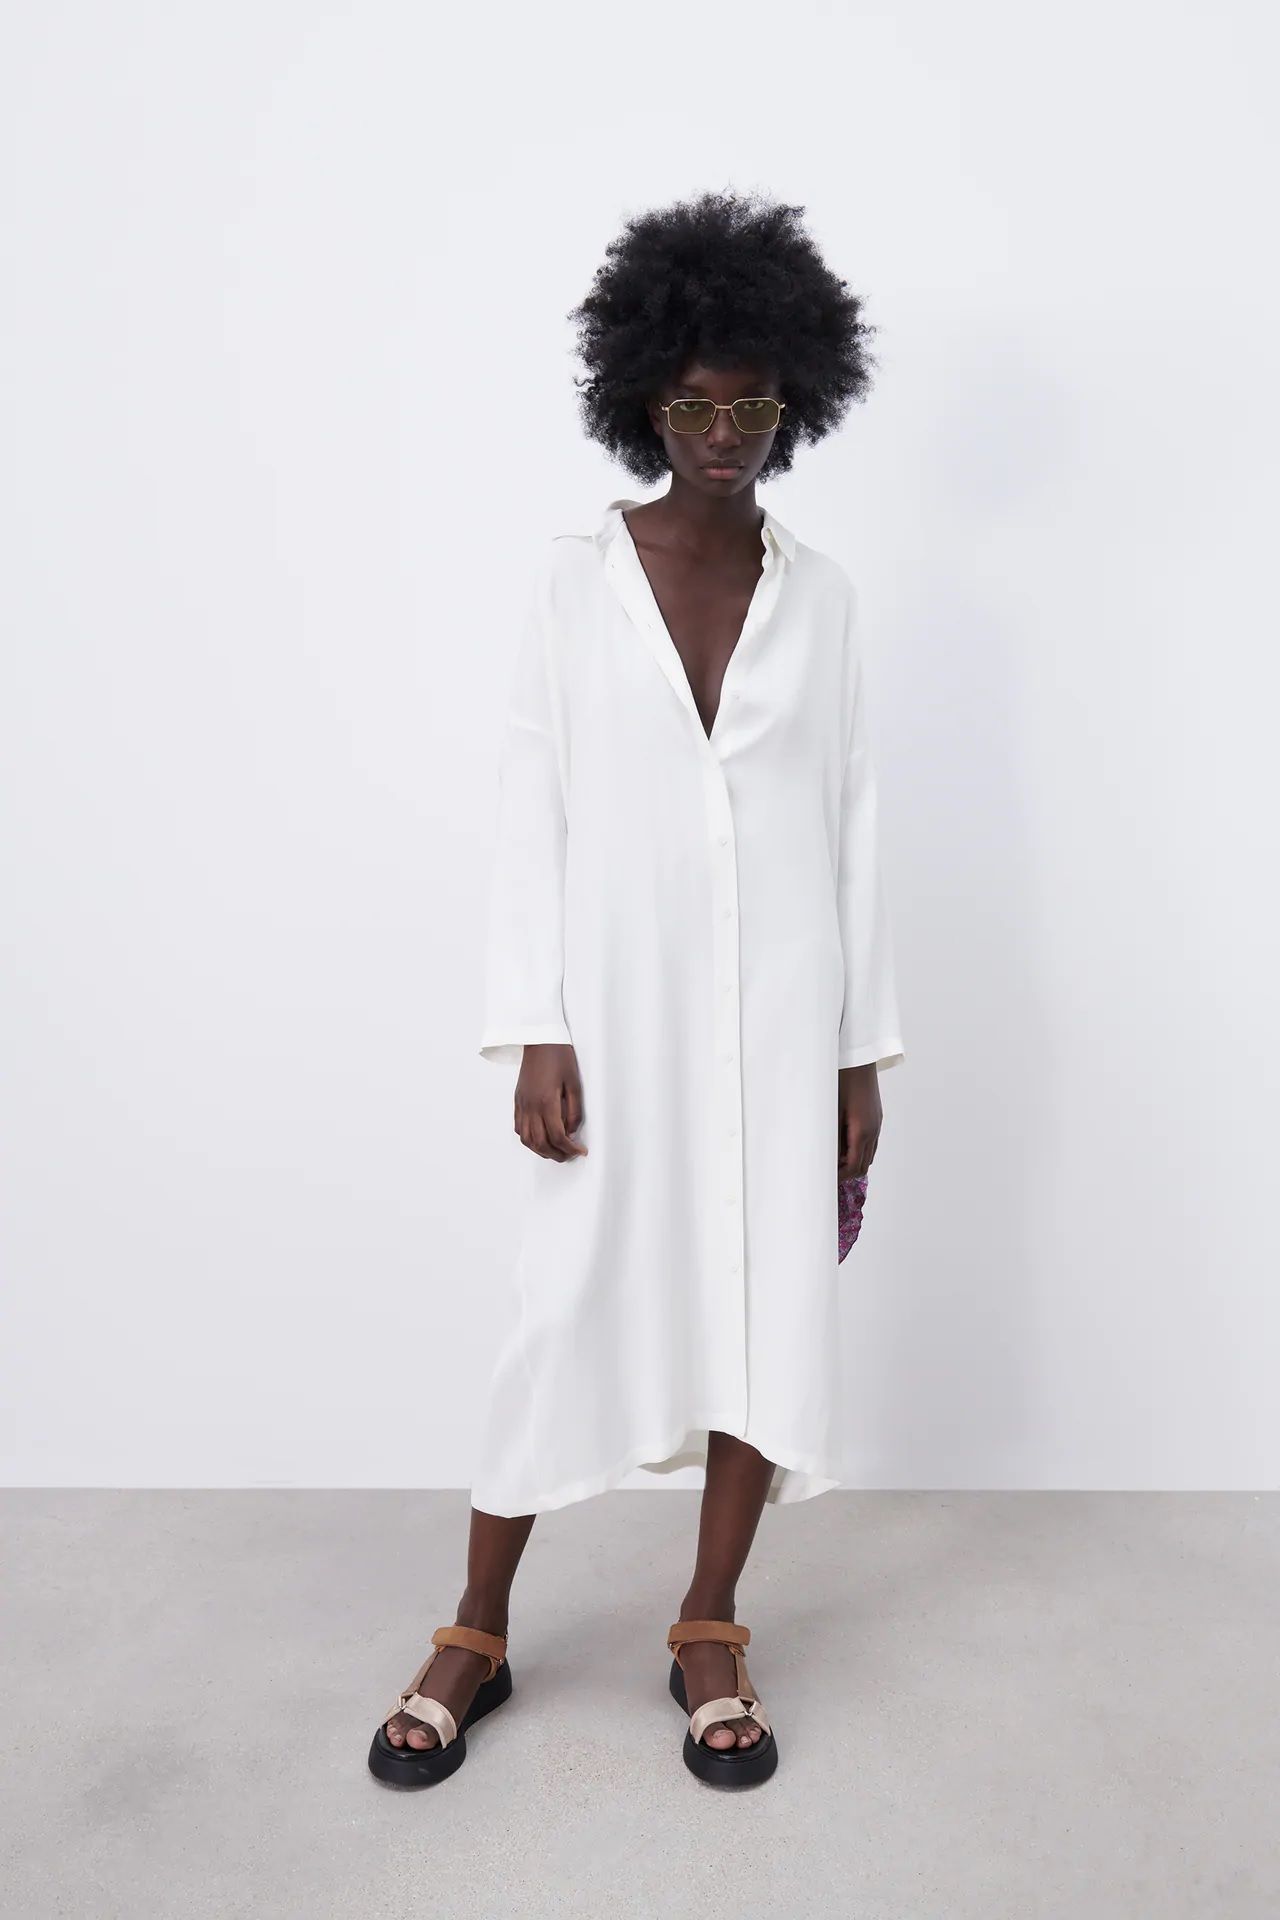 Tomar represalias por supuesto Alas Zara reinventa su vestido camisero blanco largo